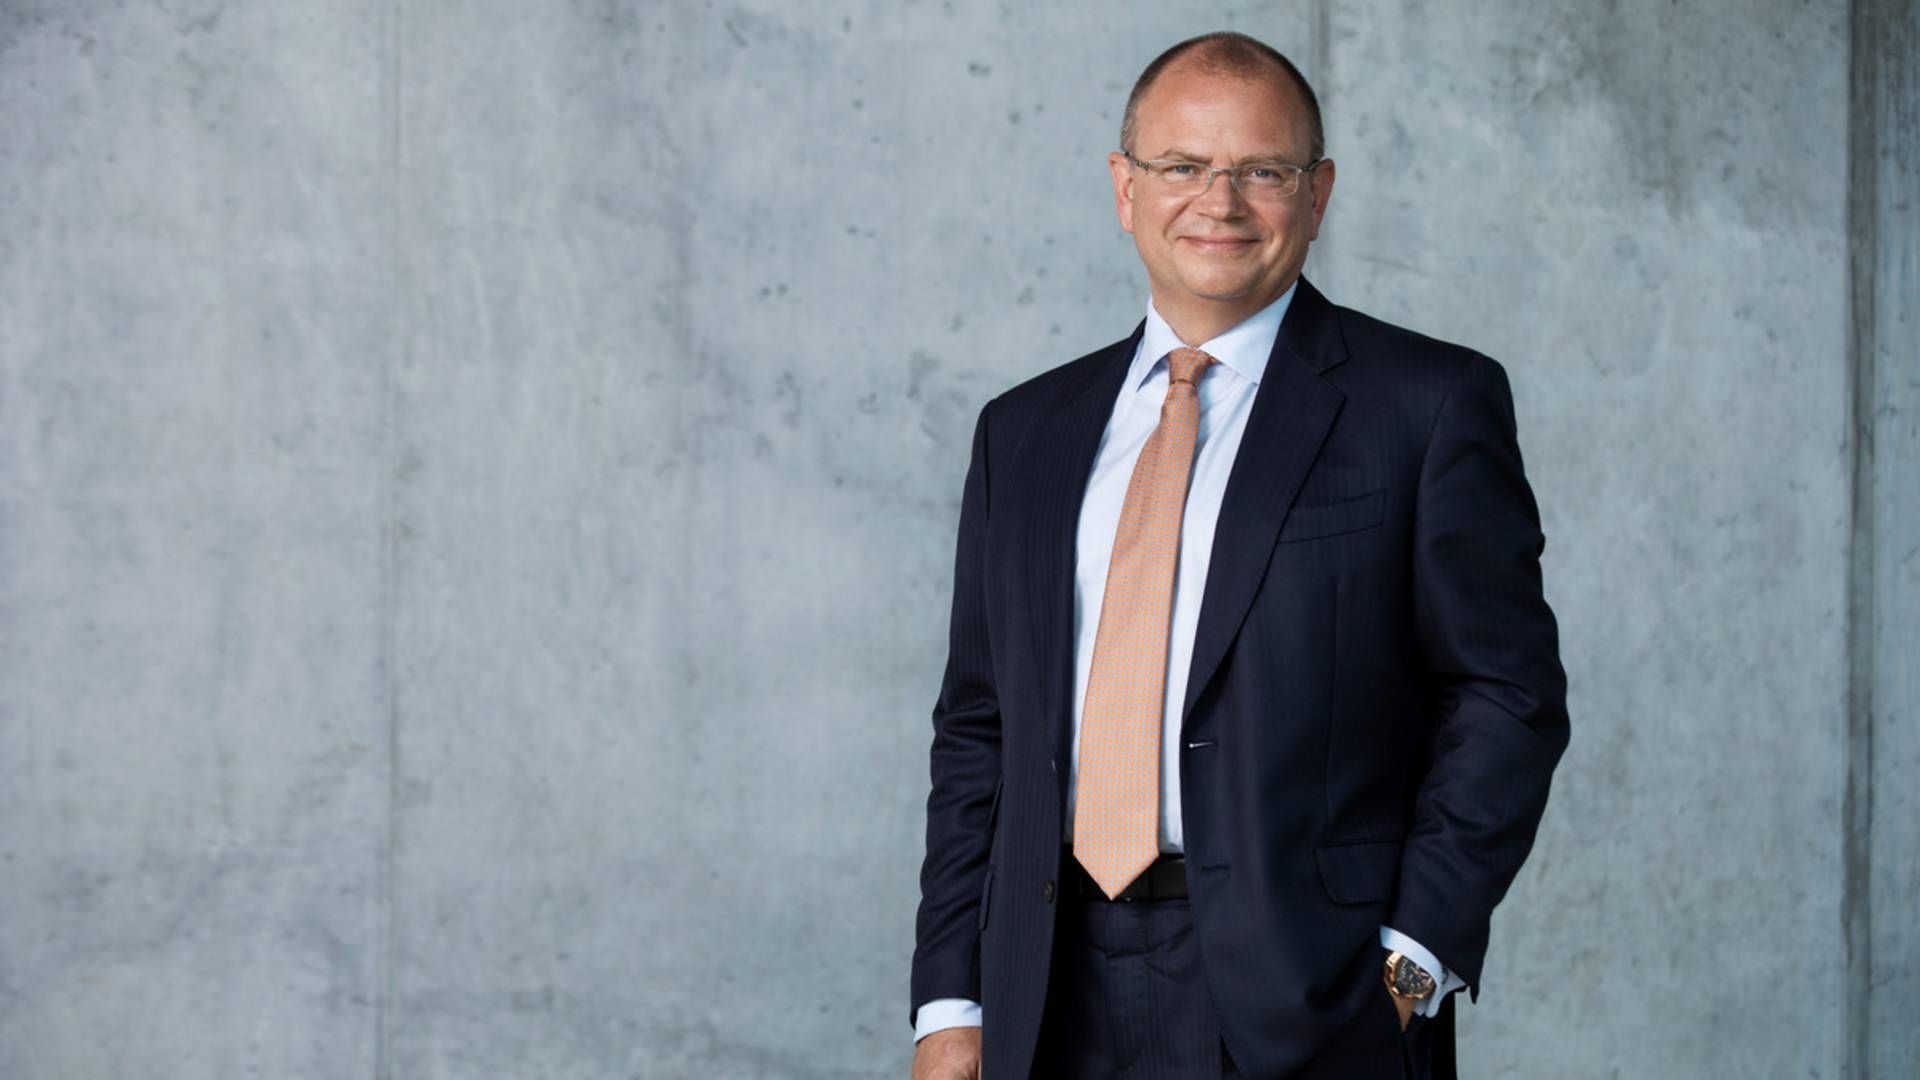 Henrik Andersen, adm. direktør i Vestas Wind Systems, er nyt bestyrelsesmedlem i Saxo Bank. | Foto: Saxo Bank // PR